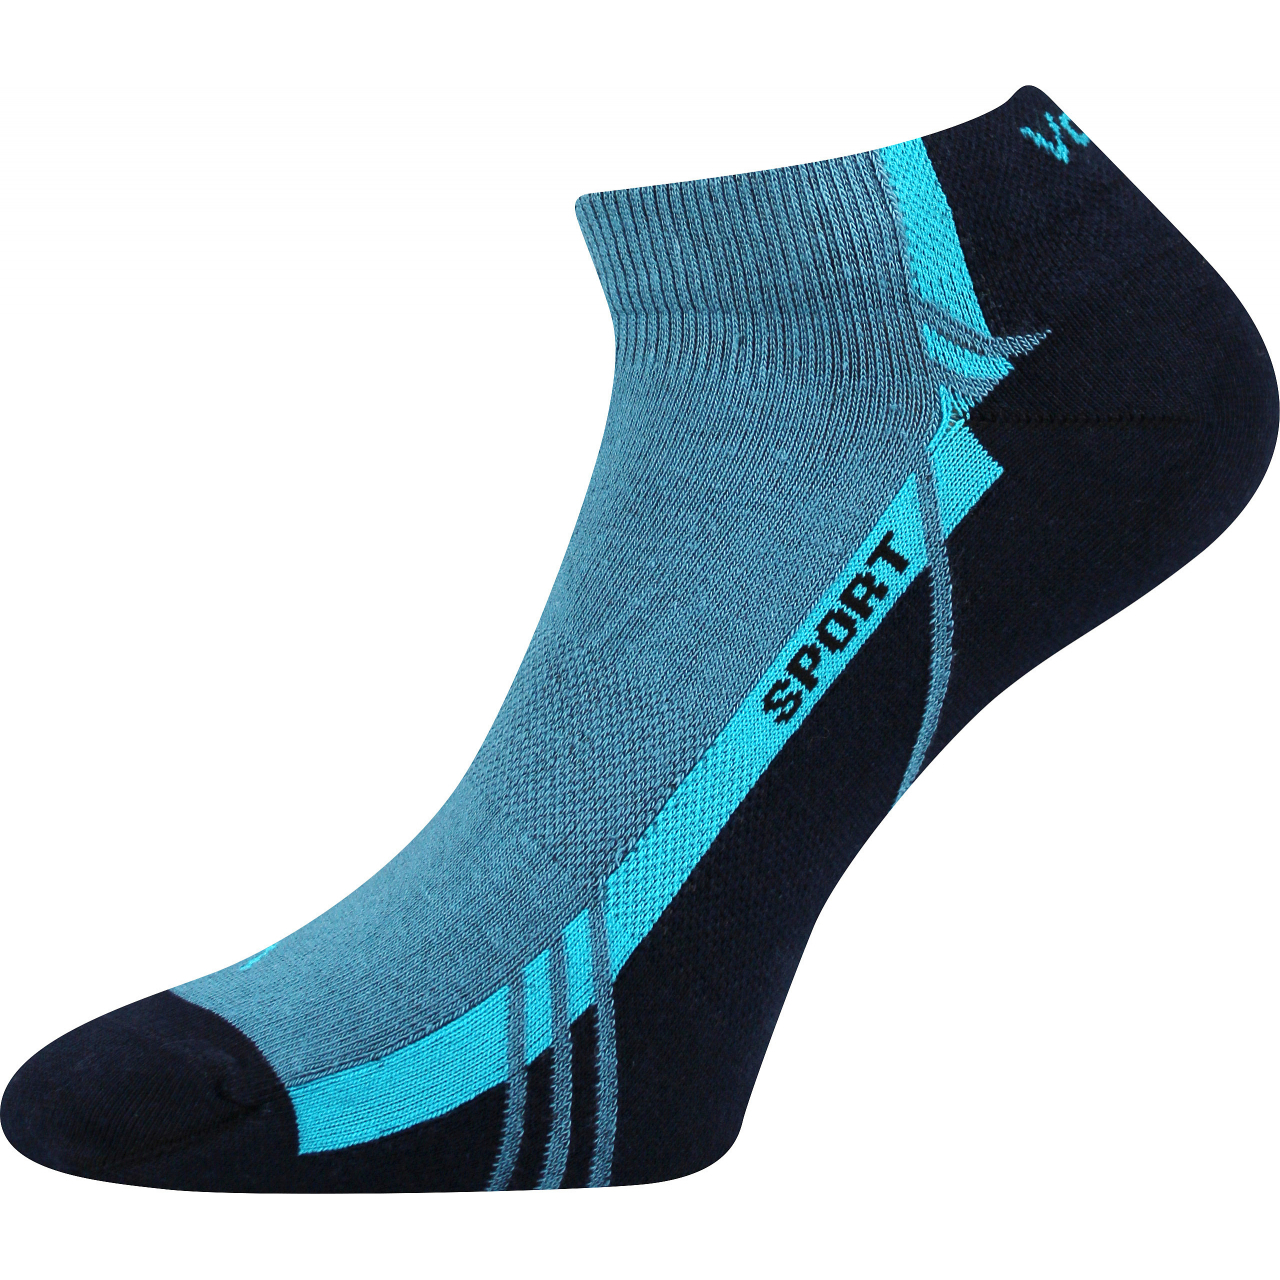 Ponožky unisex sportovní Voxx Pinas - modré-černé, 35-38